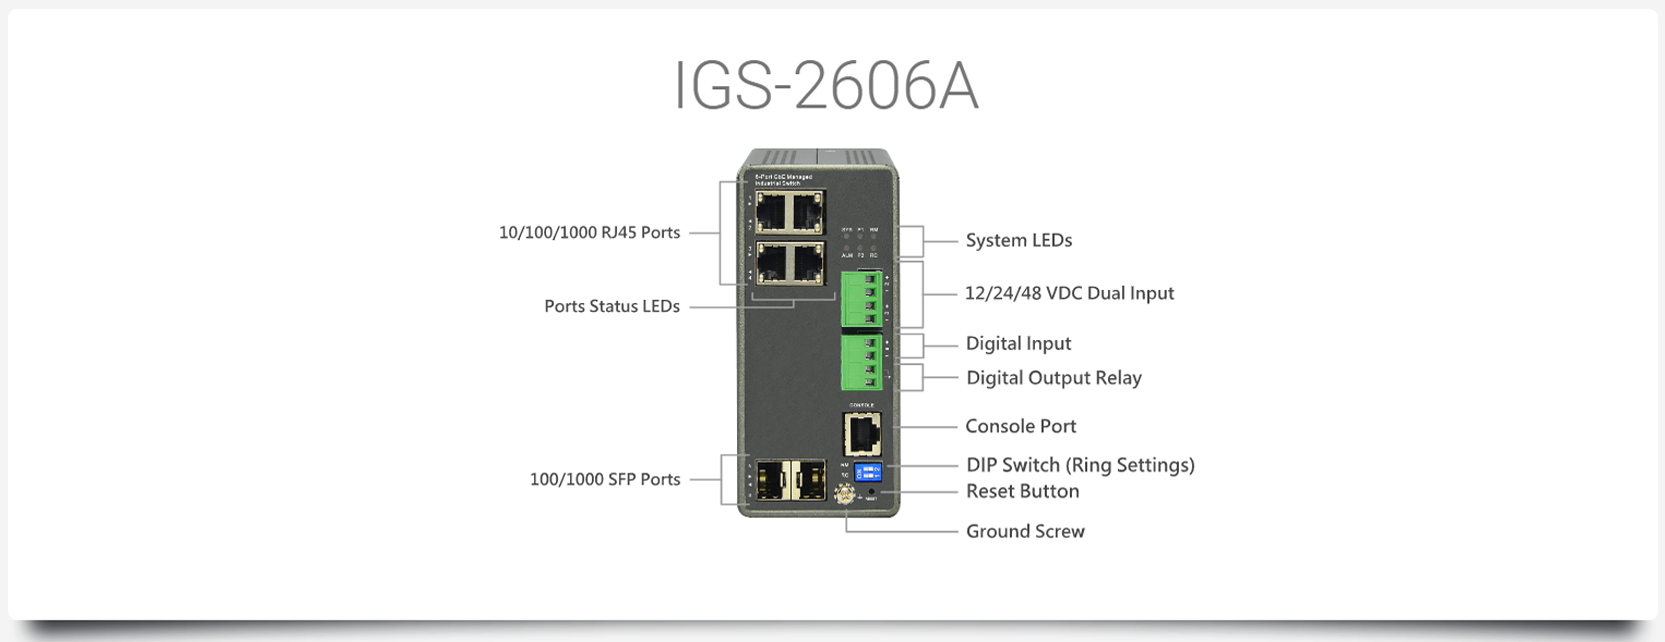 IGS-2606A